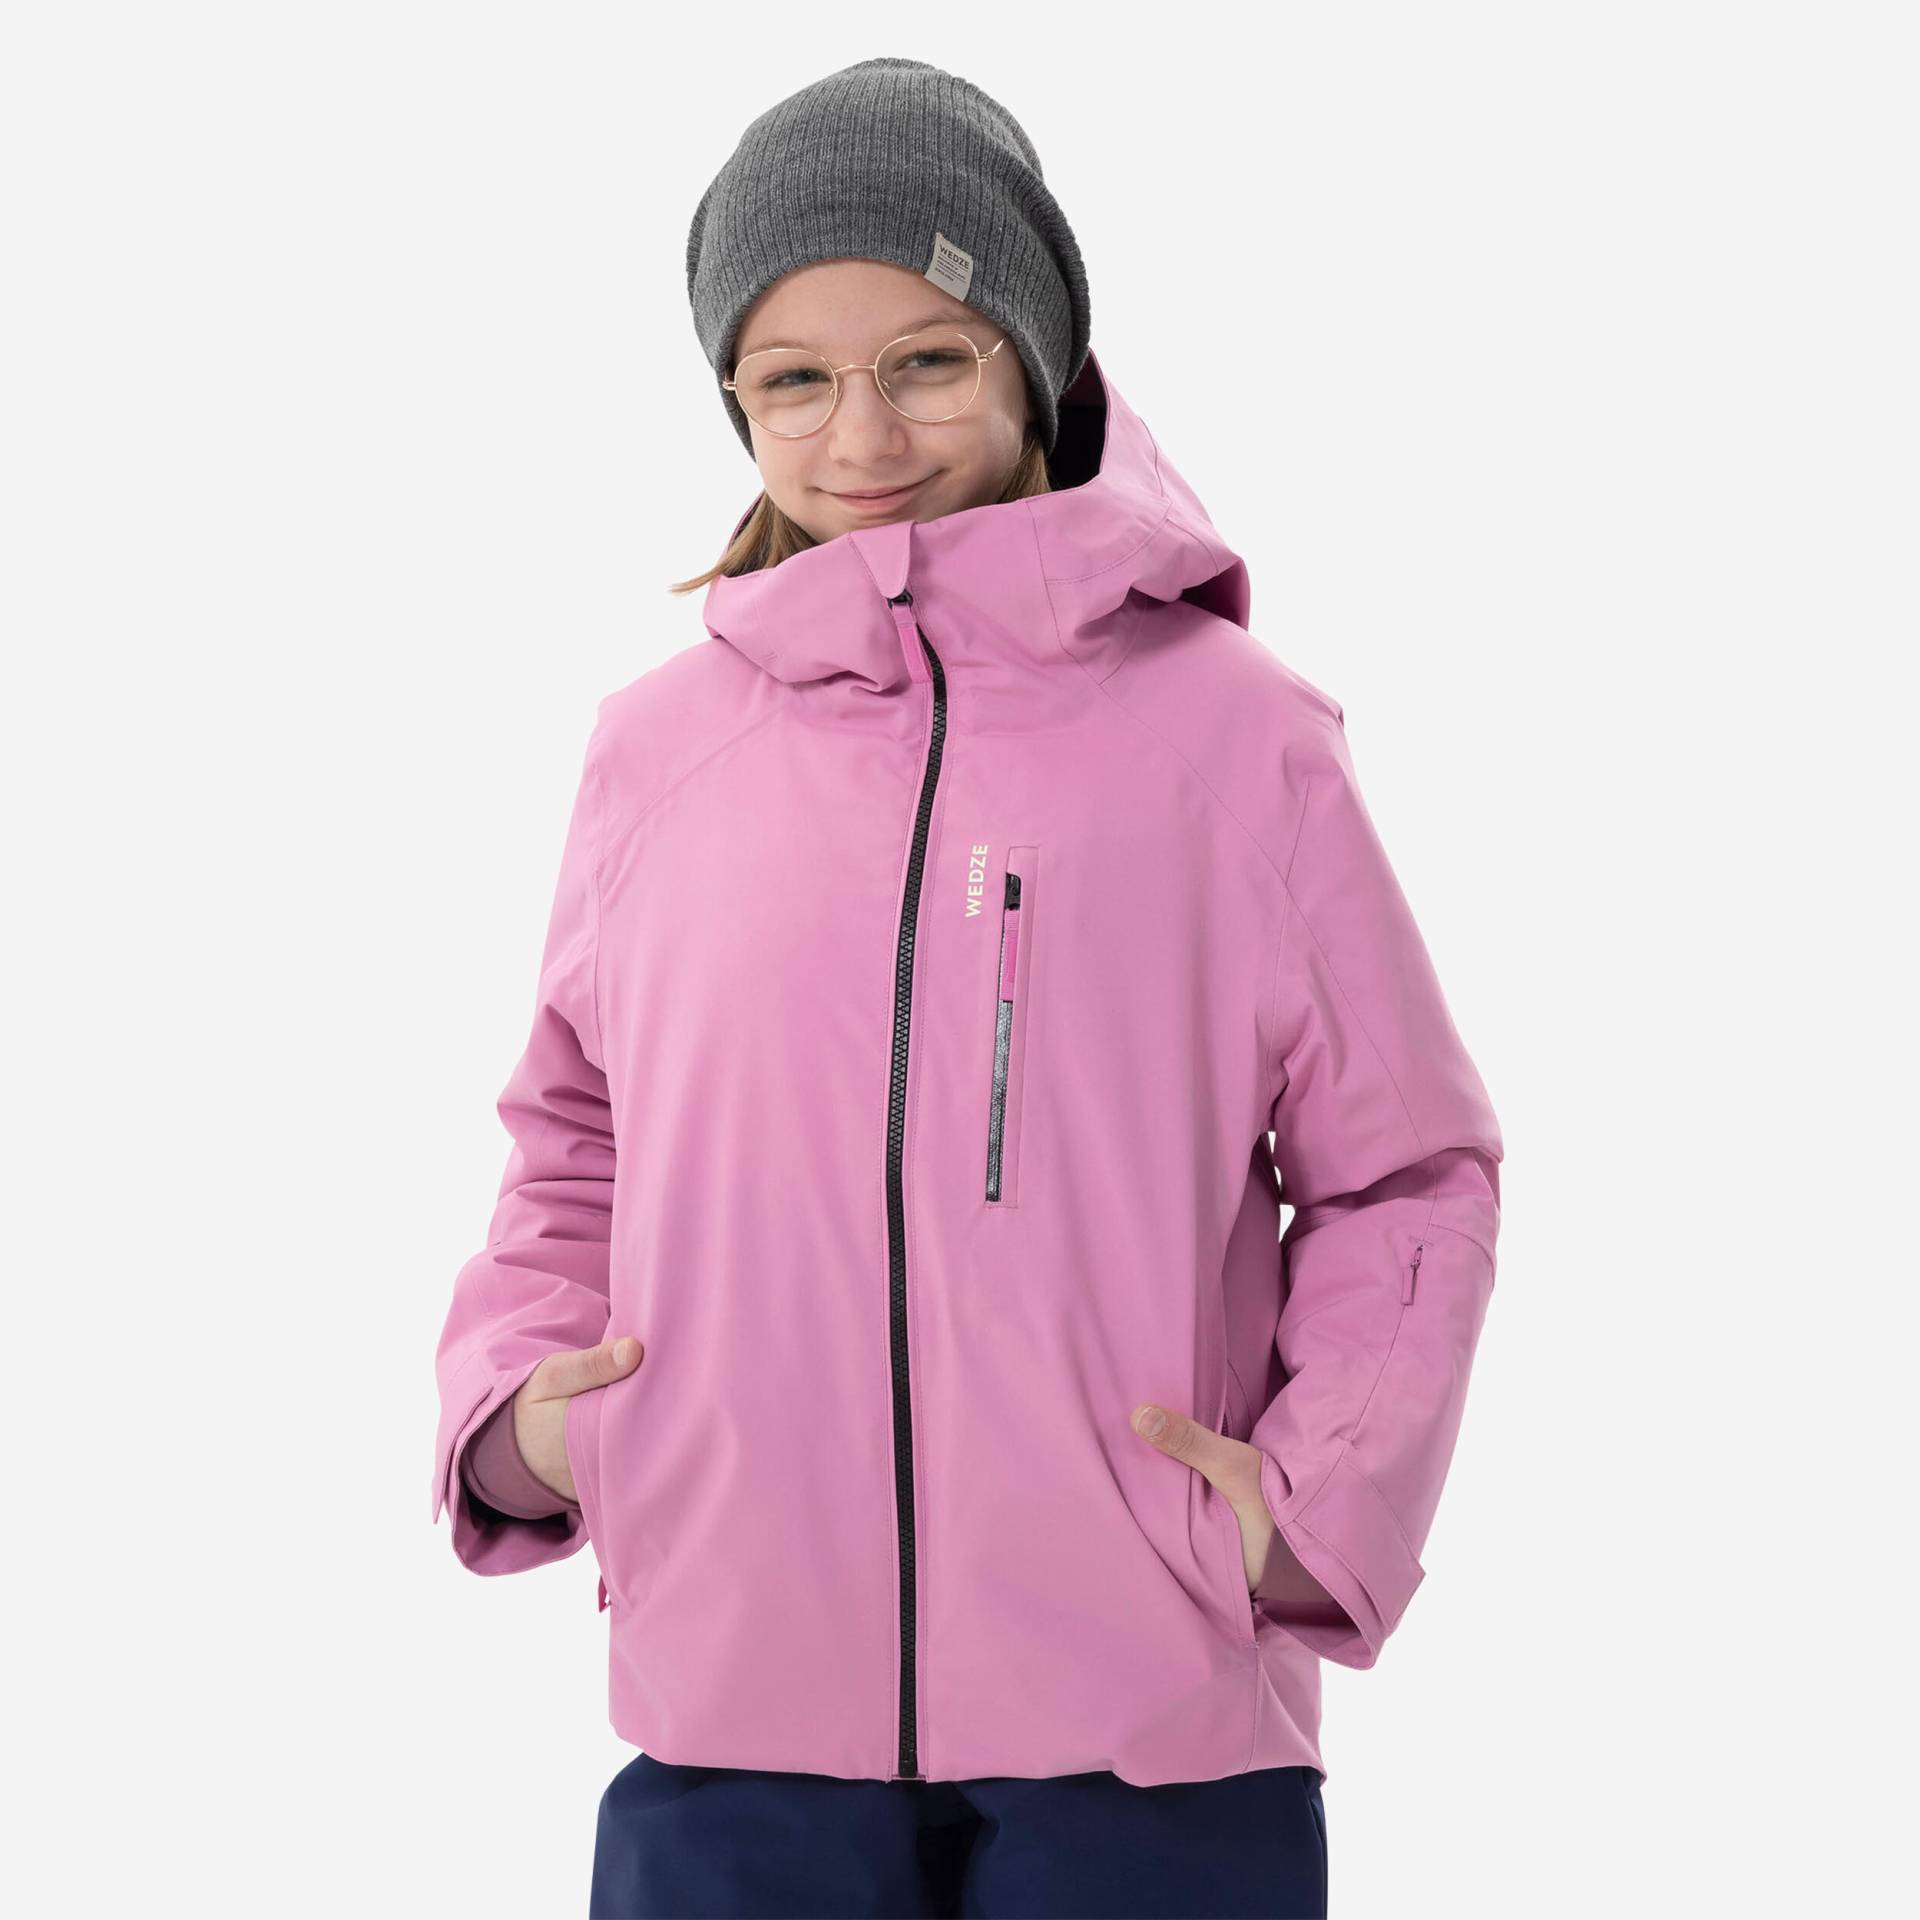 Skijacke Kinder warm wasserdicht - 550 rosa von WEDZE